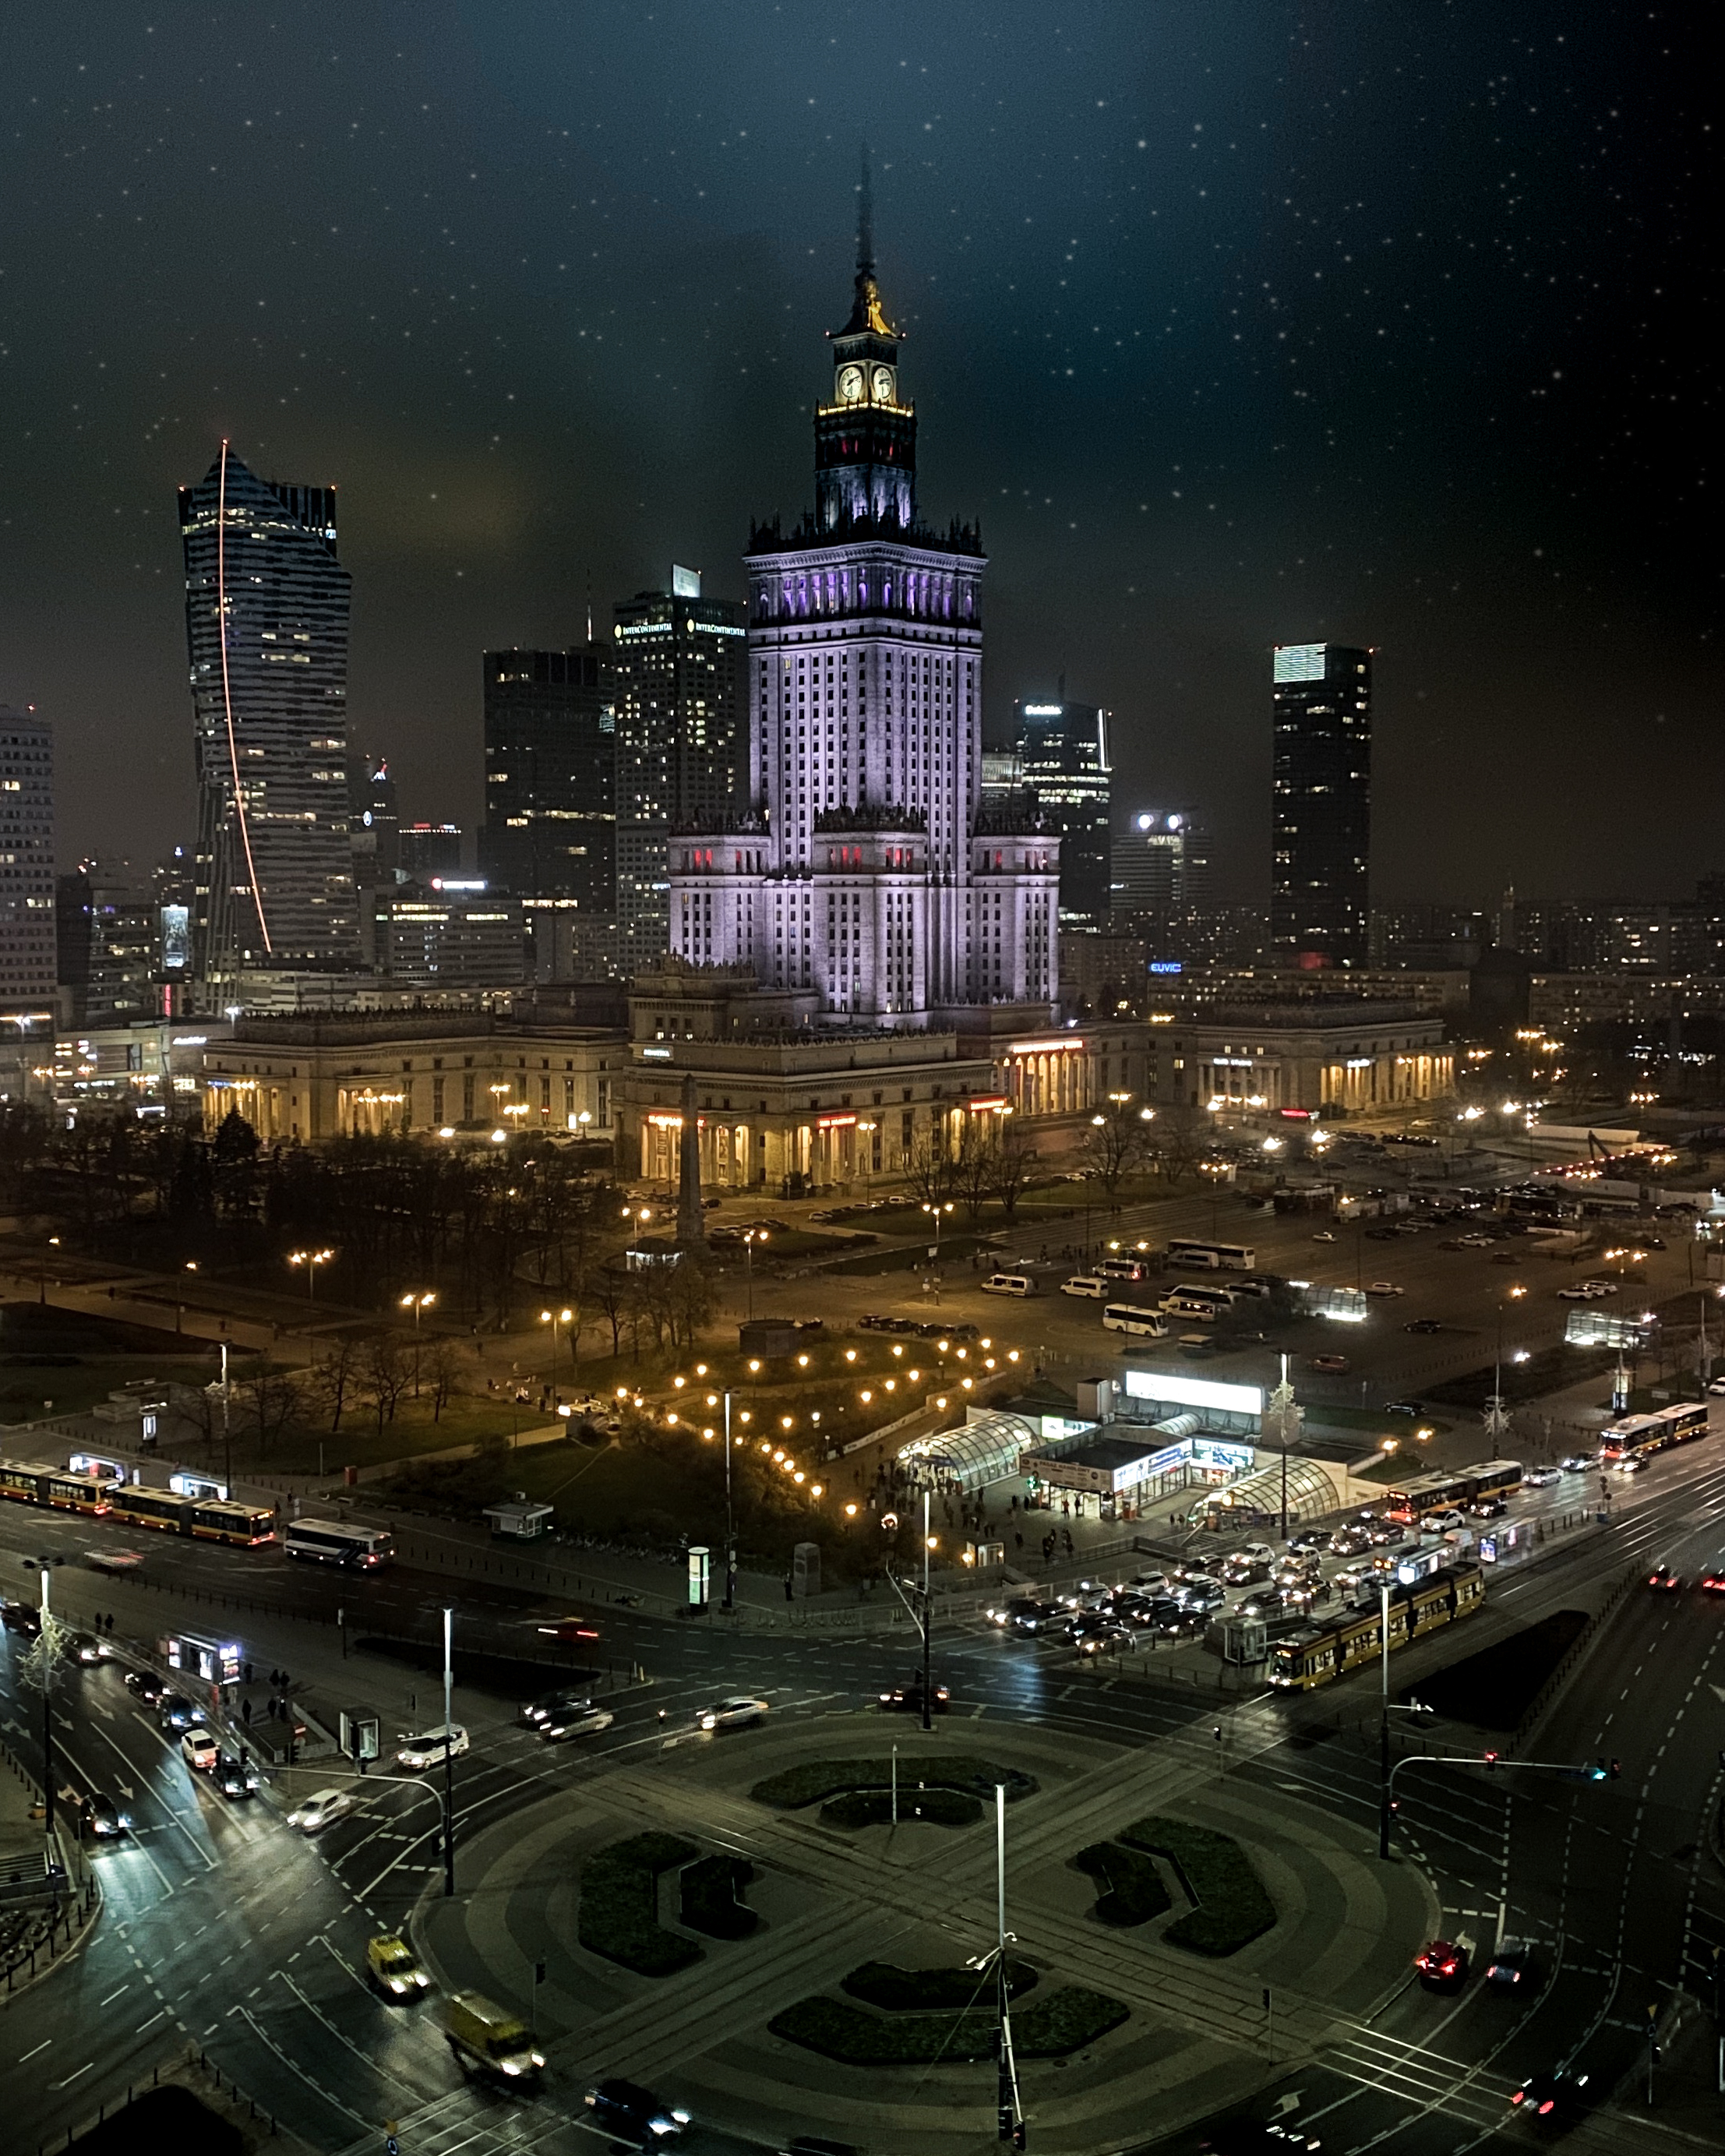 Warsaw metropole